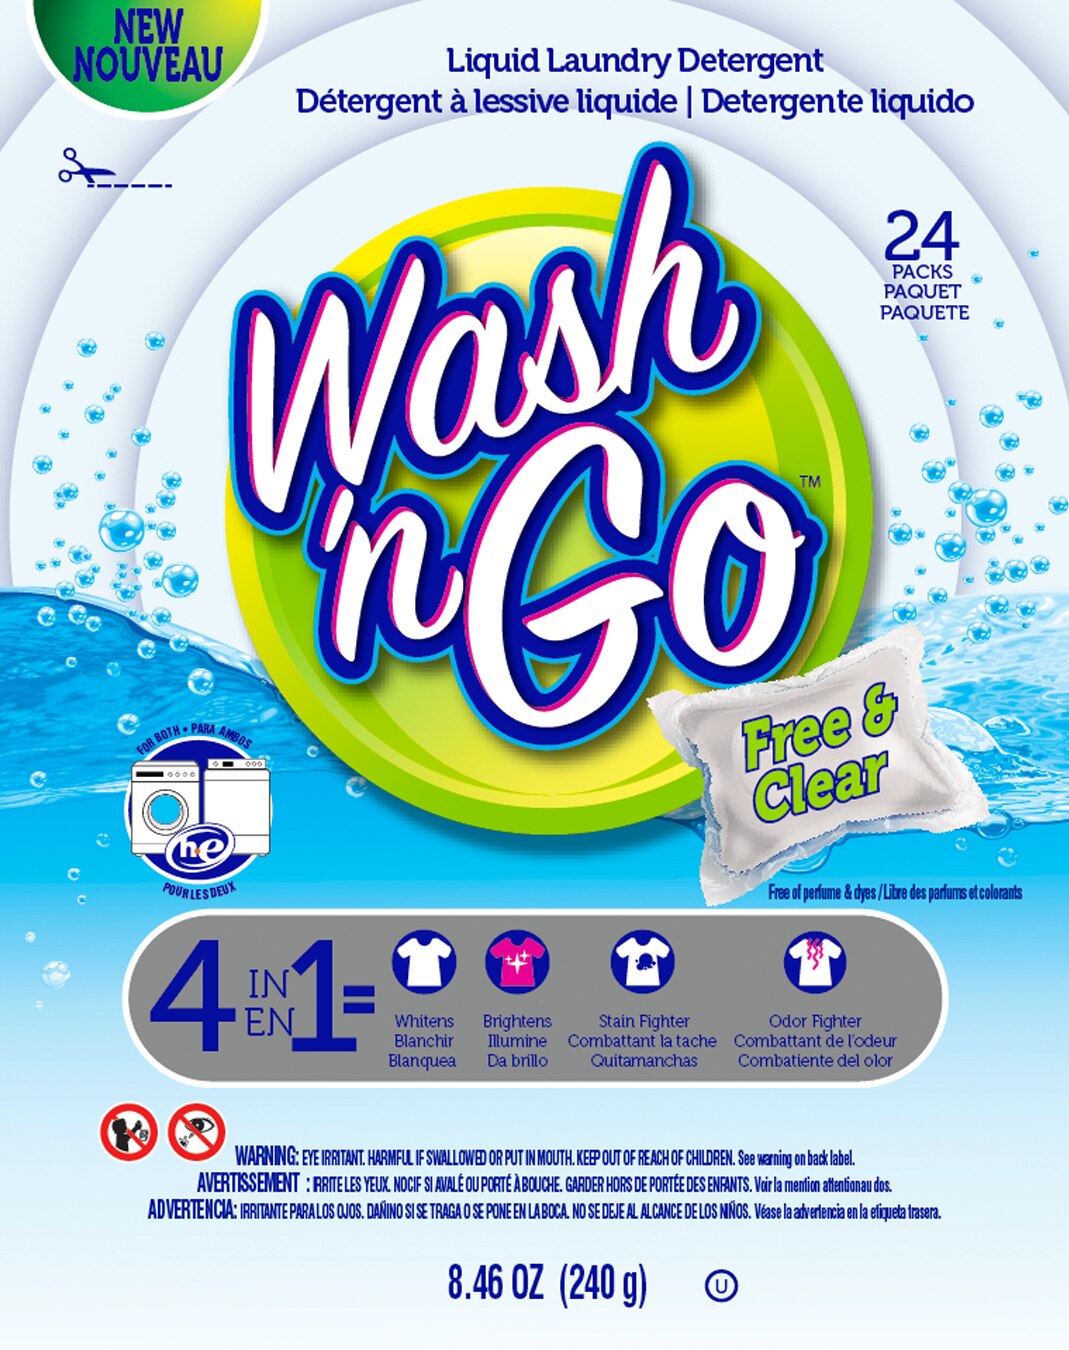 Wash 'n Go Free & Clear, 24 CT